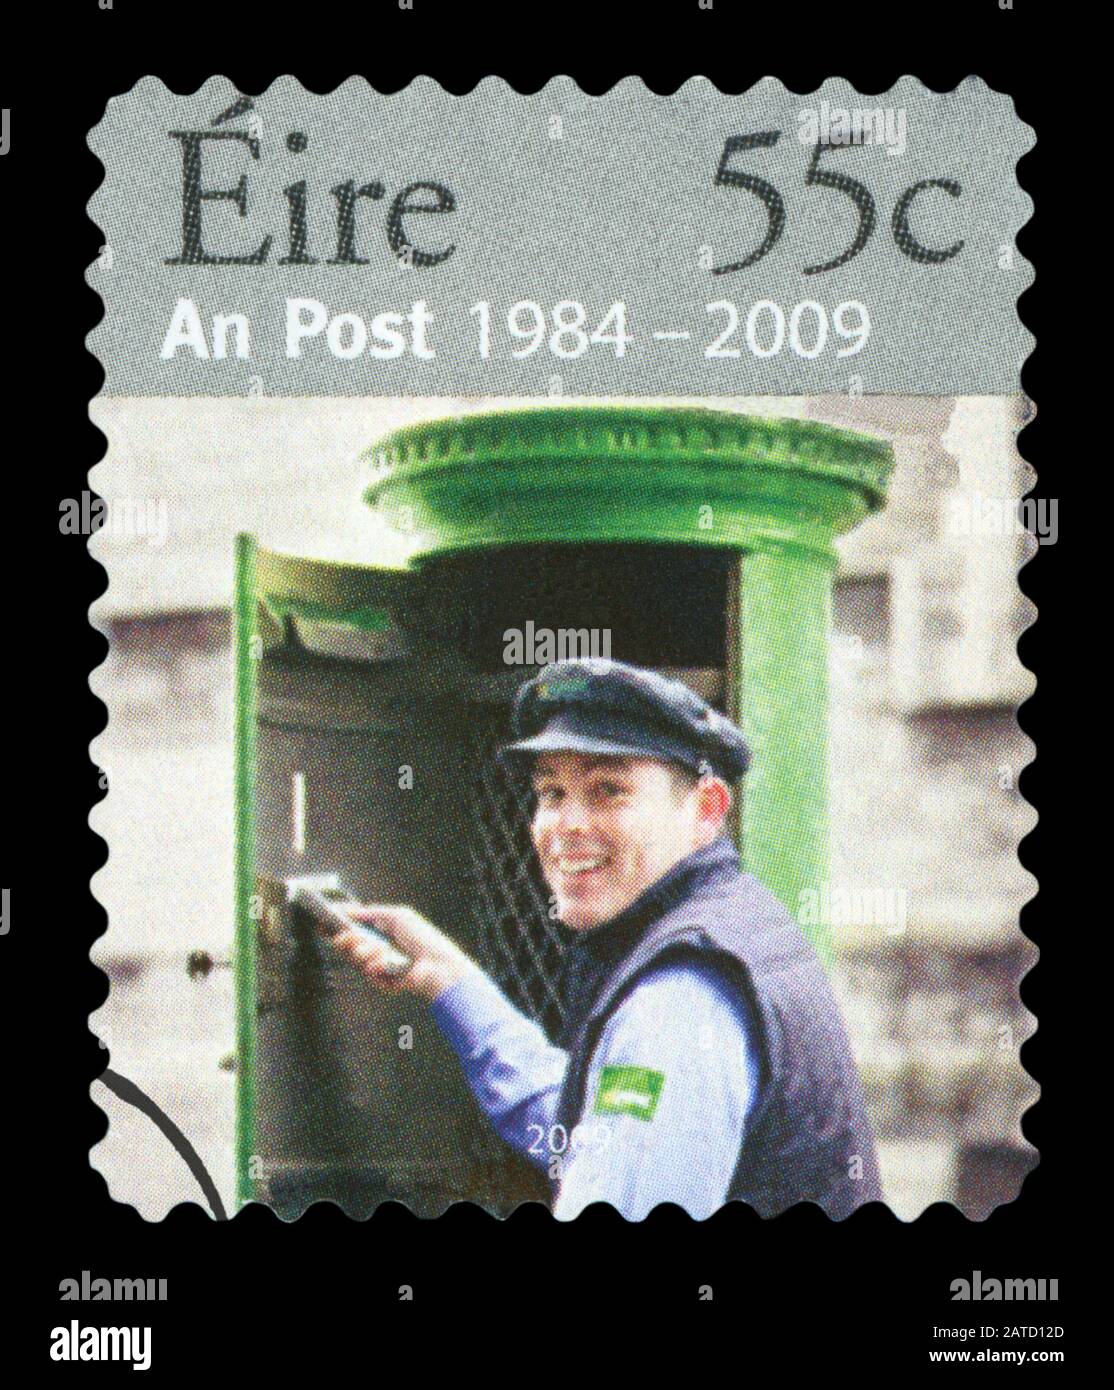 Irlanda - CIRCA 2009 : cancellato un francobollo postale irlandese raffigurante Un Post Eire dal 1984 al 2009, circa 2009. Foto Stock